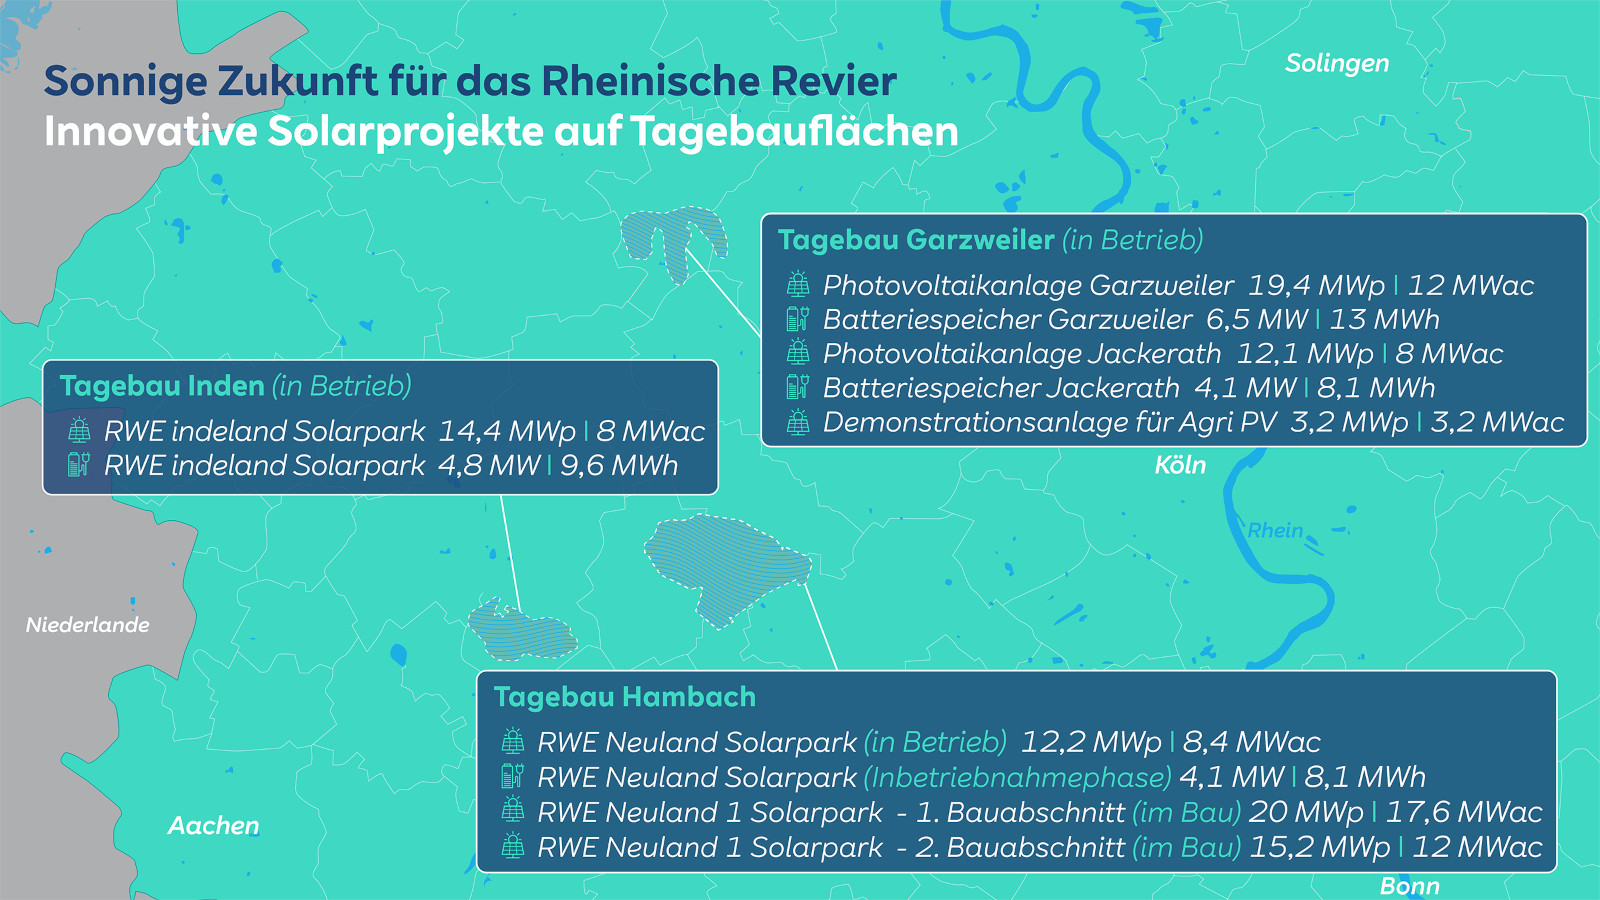 Sonnige Zukunft für das Rheinische Revier | RWE